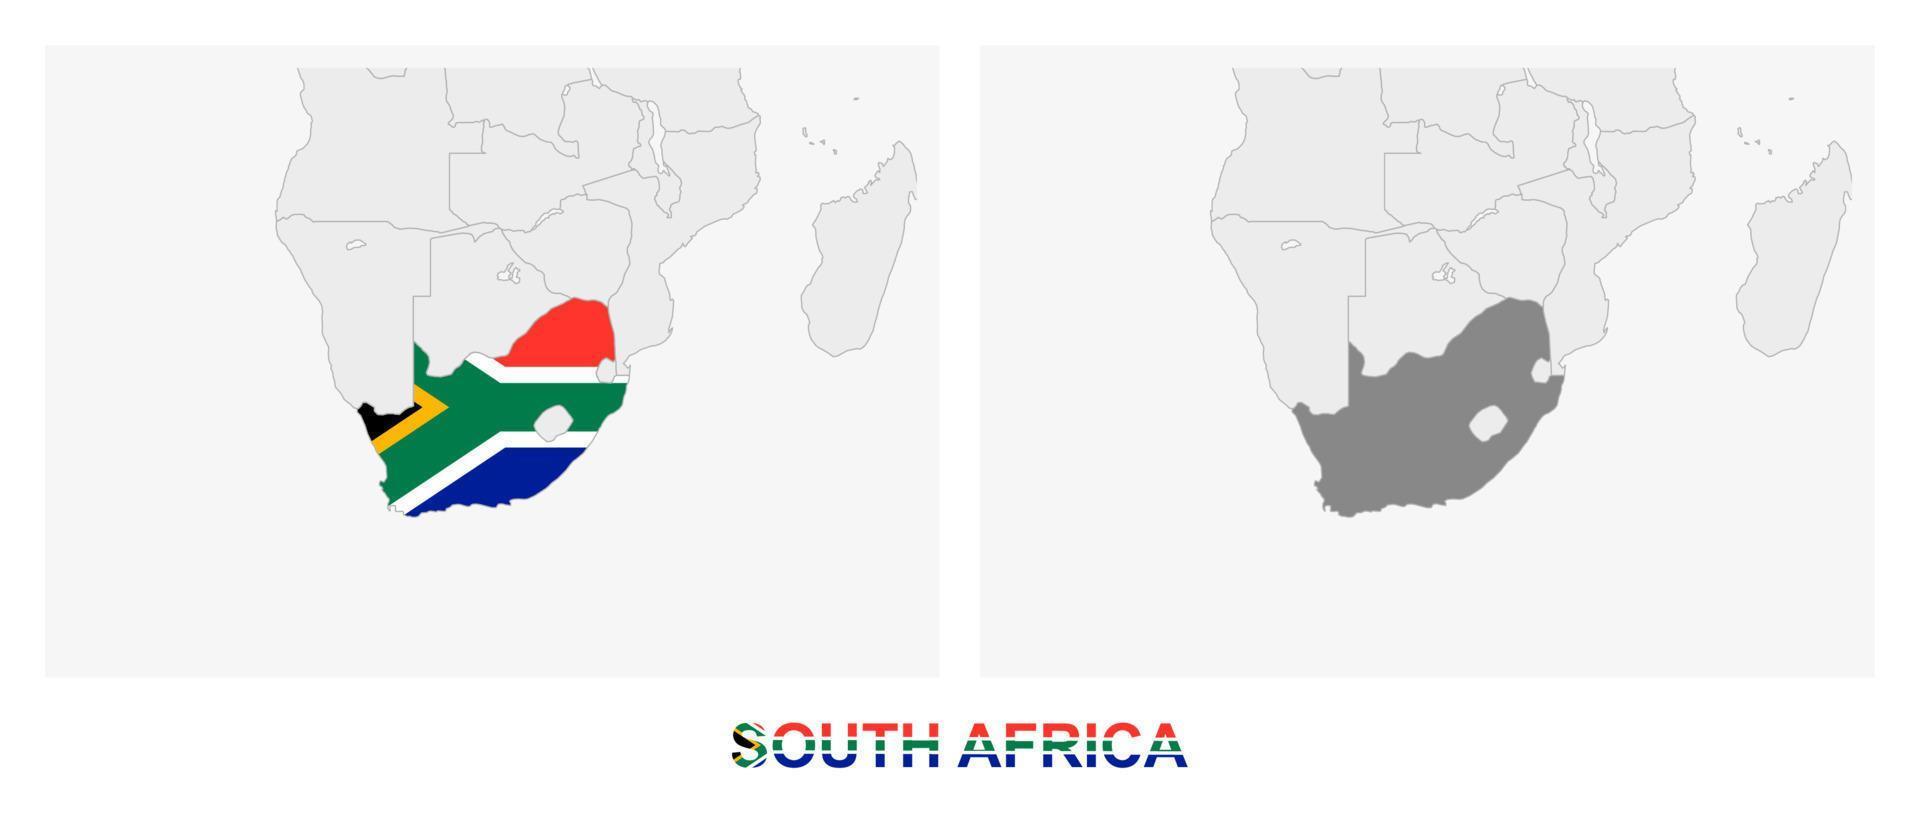 deux versions de la carte de l'afrique du sud, avec le drapeau de l'afrique du sud et soulignées en gris foncé. vecteur